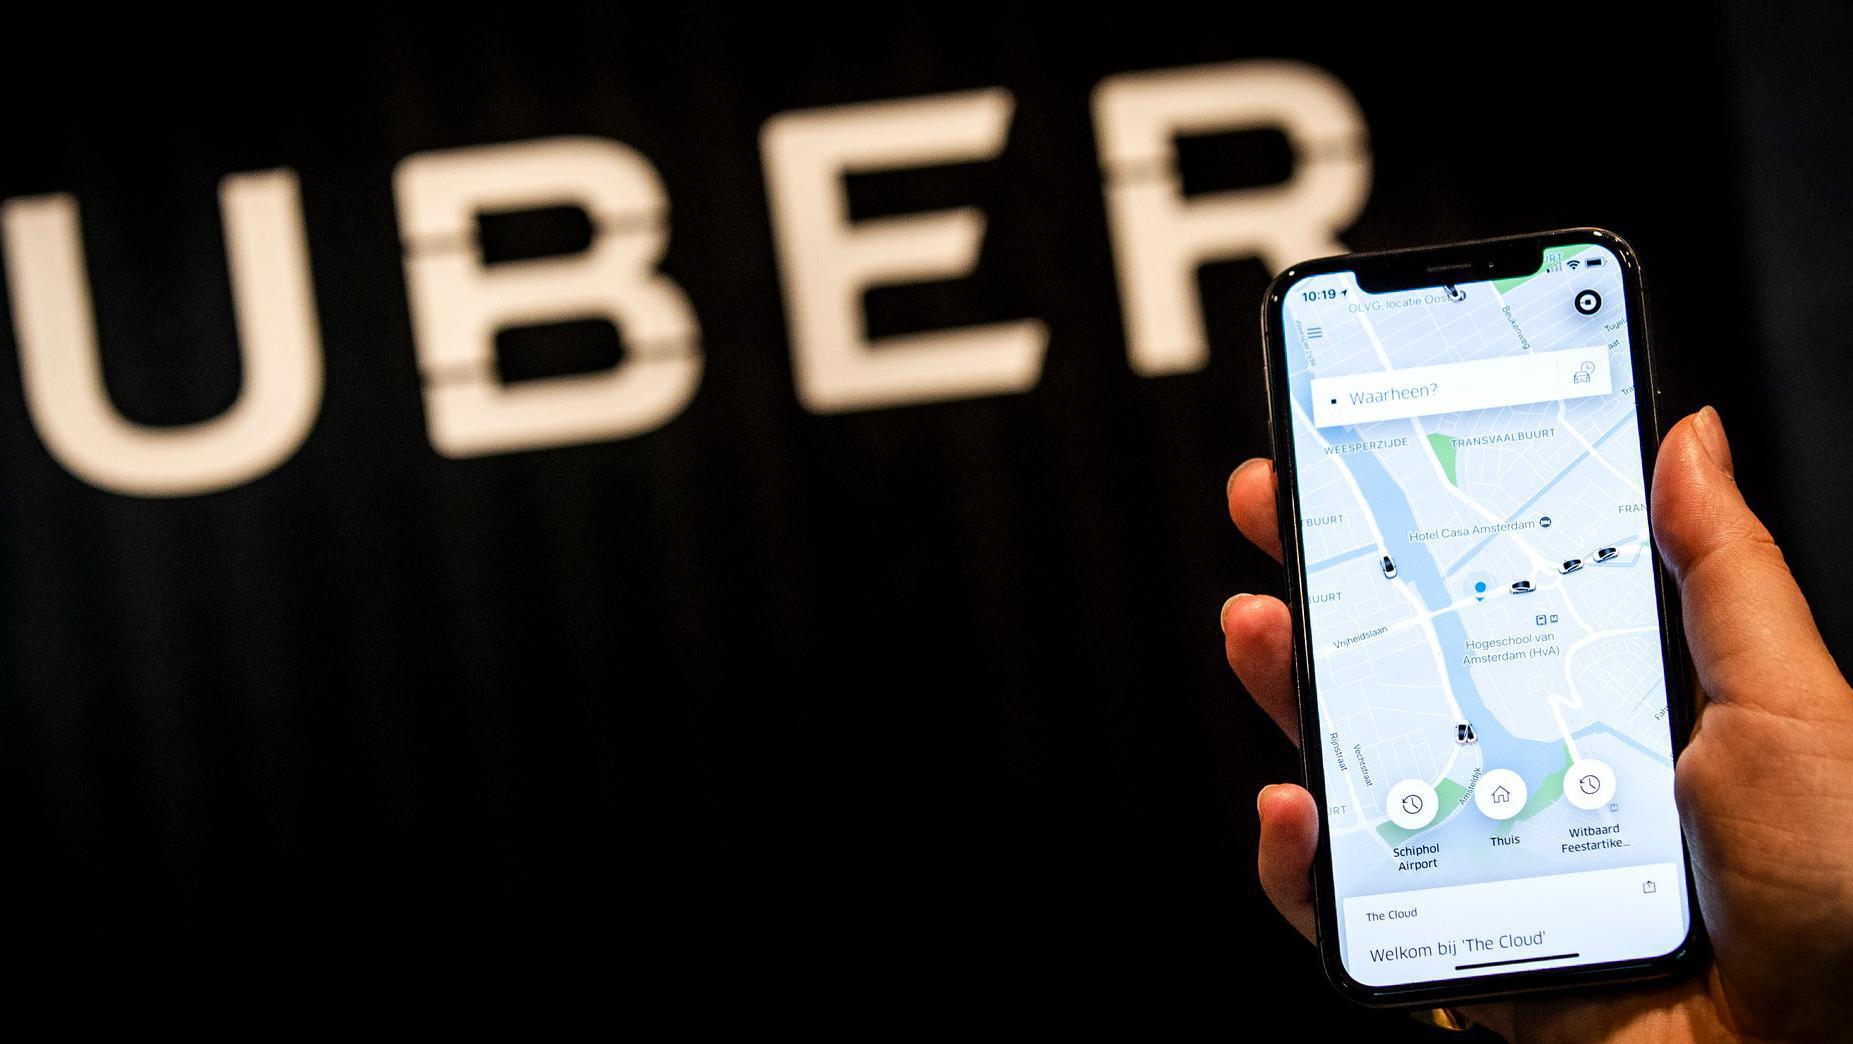 Met roep om verbod Uber neemt druk op taxibedrijf toe